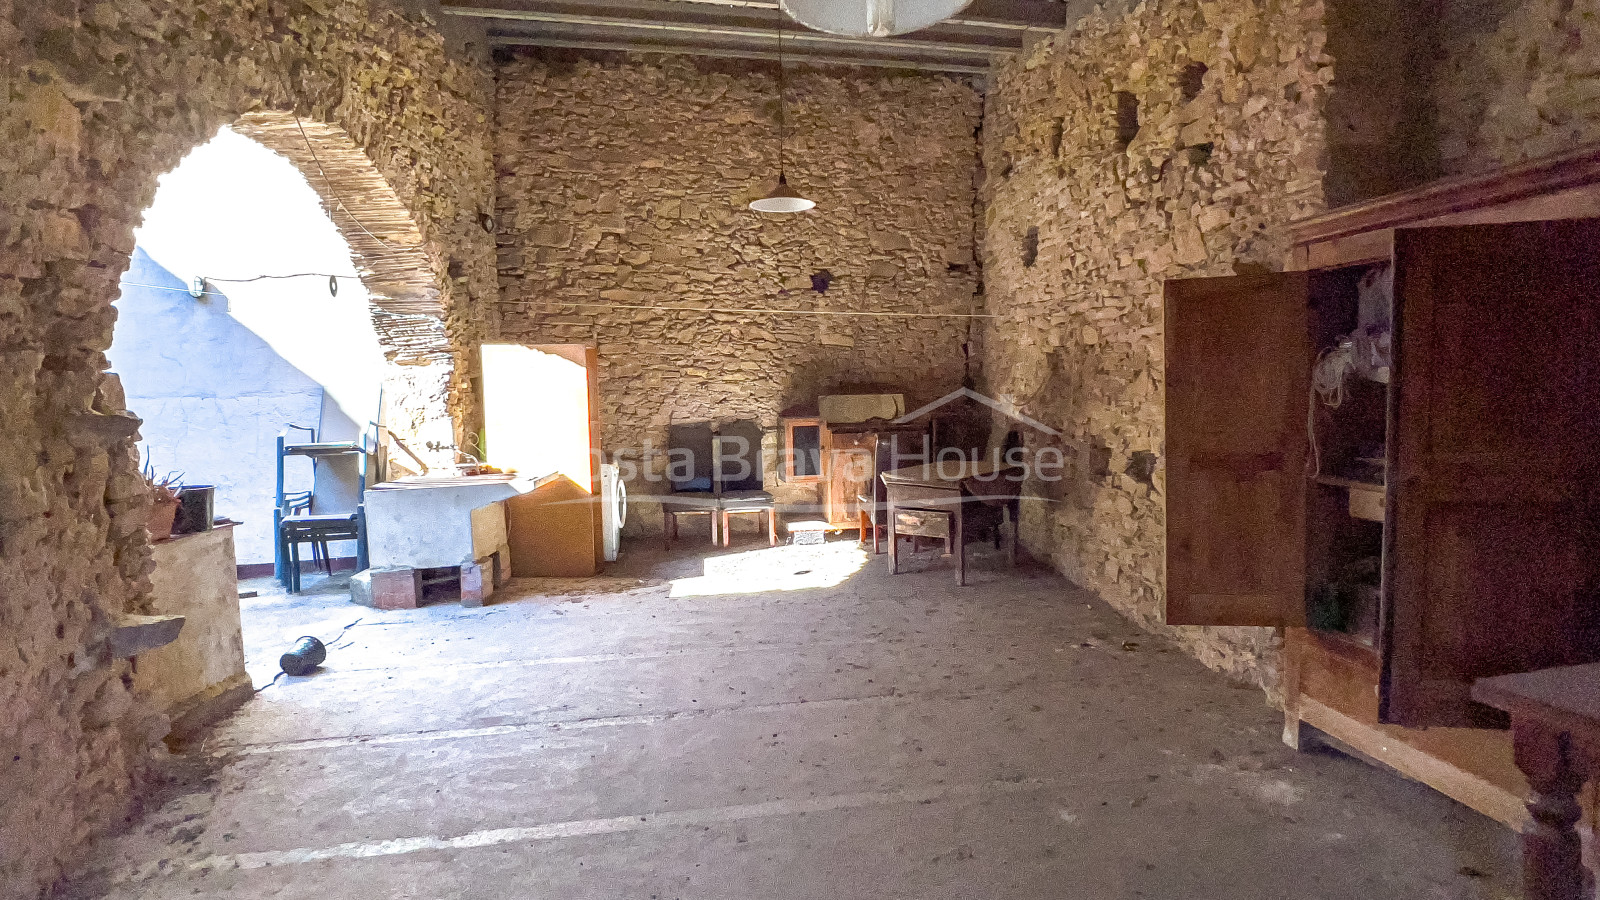 Casa de piedra en venta en Gualta, con patio interior y muchas posibilidades de aprovechamiento